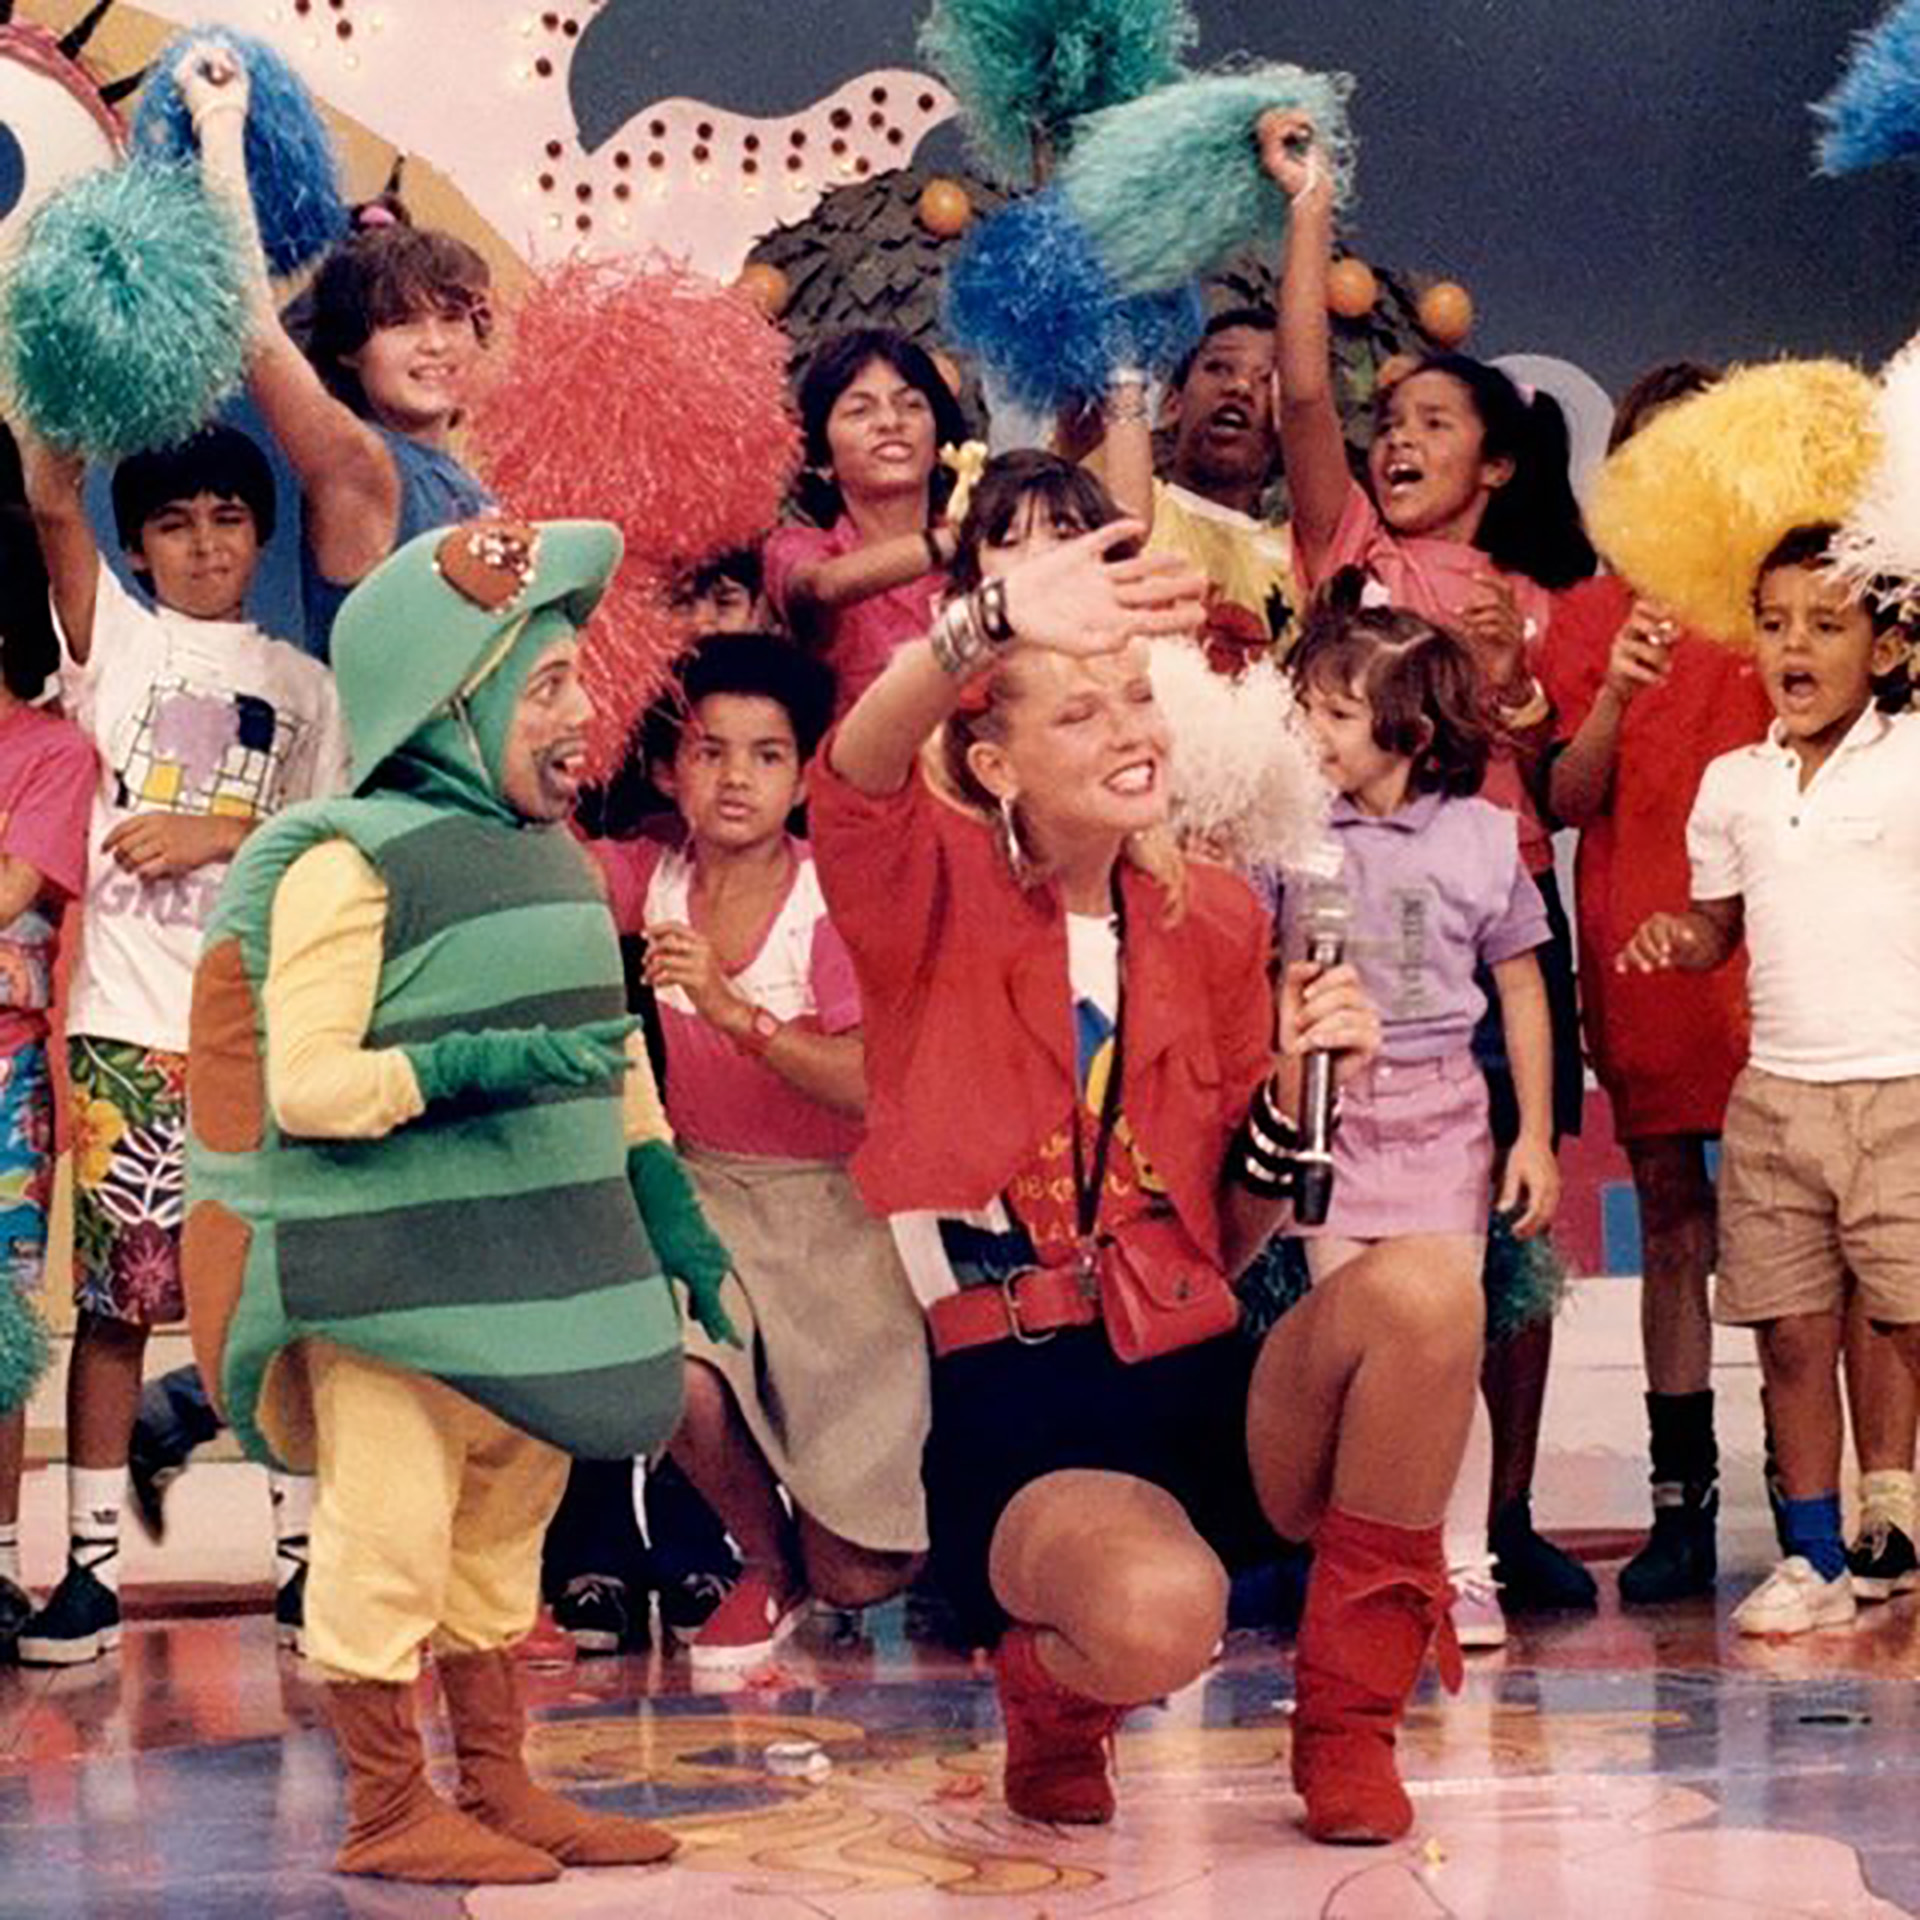 El show de Xuxa se estrenó en Telefe el 6 de mayo de 1991. De lunes a viernes, de 5 a 6 de la tarde. Luego tuvo una temporada en Canal 13, mientras el formato se iba replicando en 17 países de habla hispana.